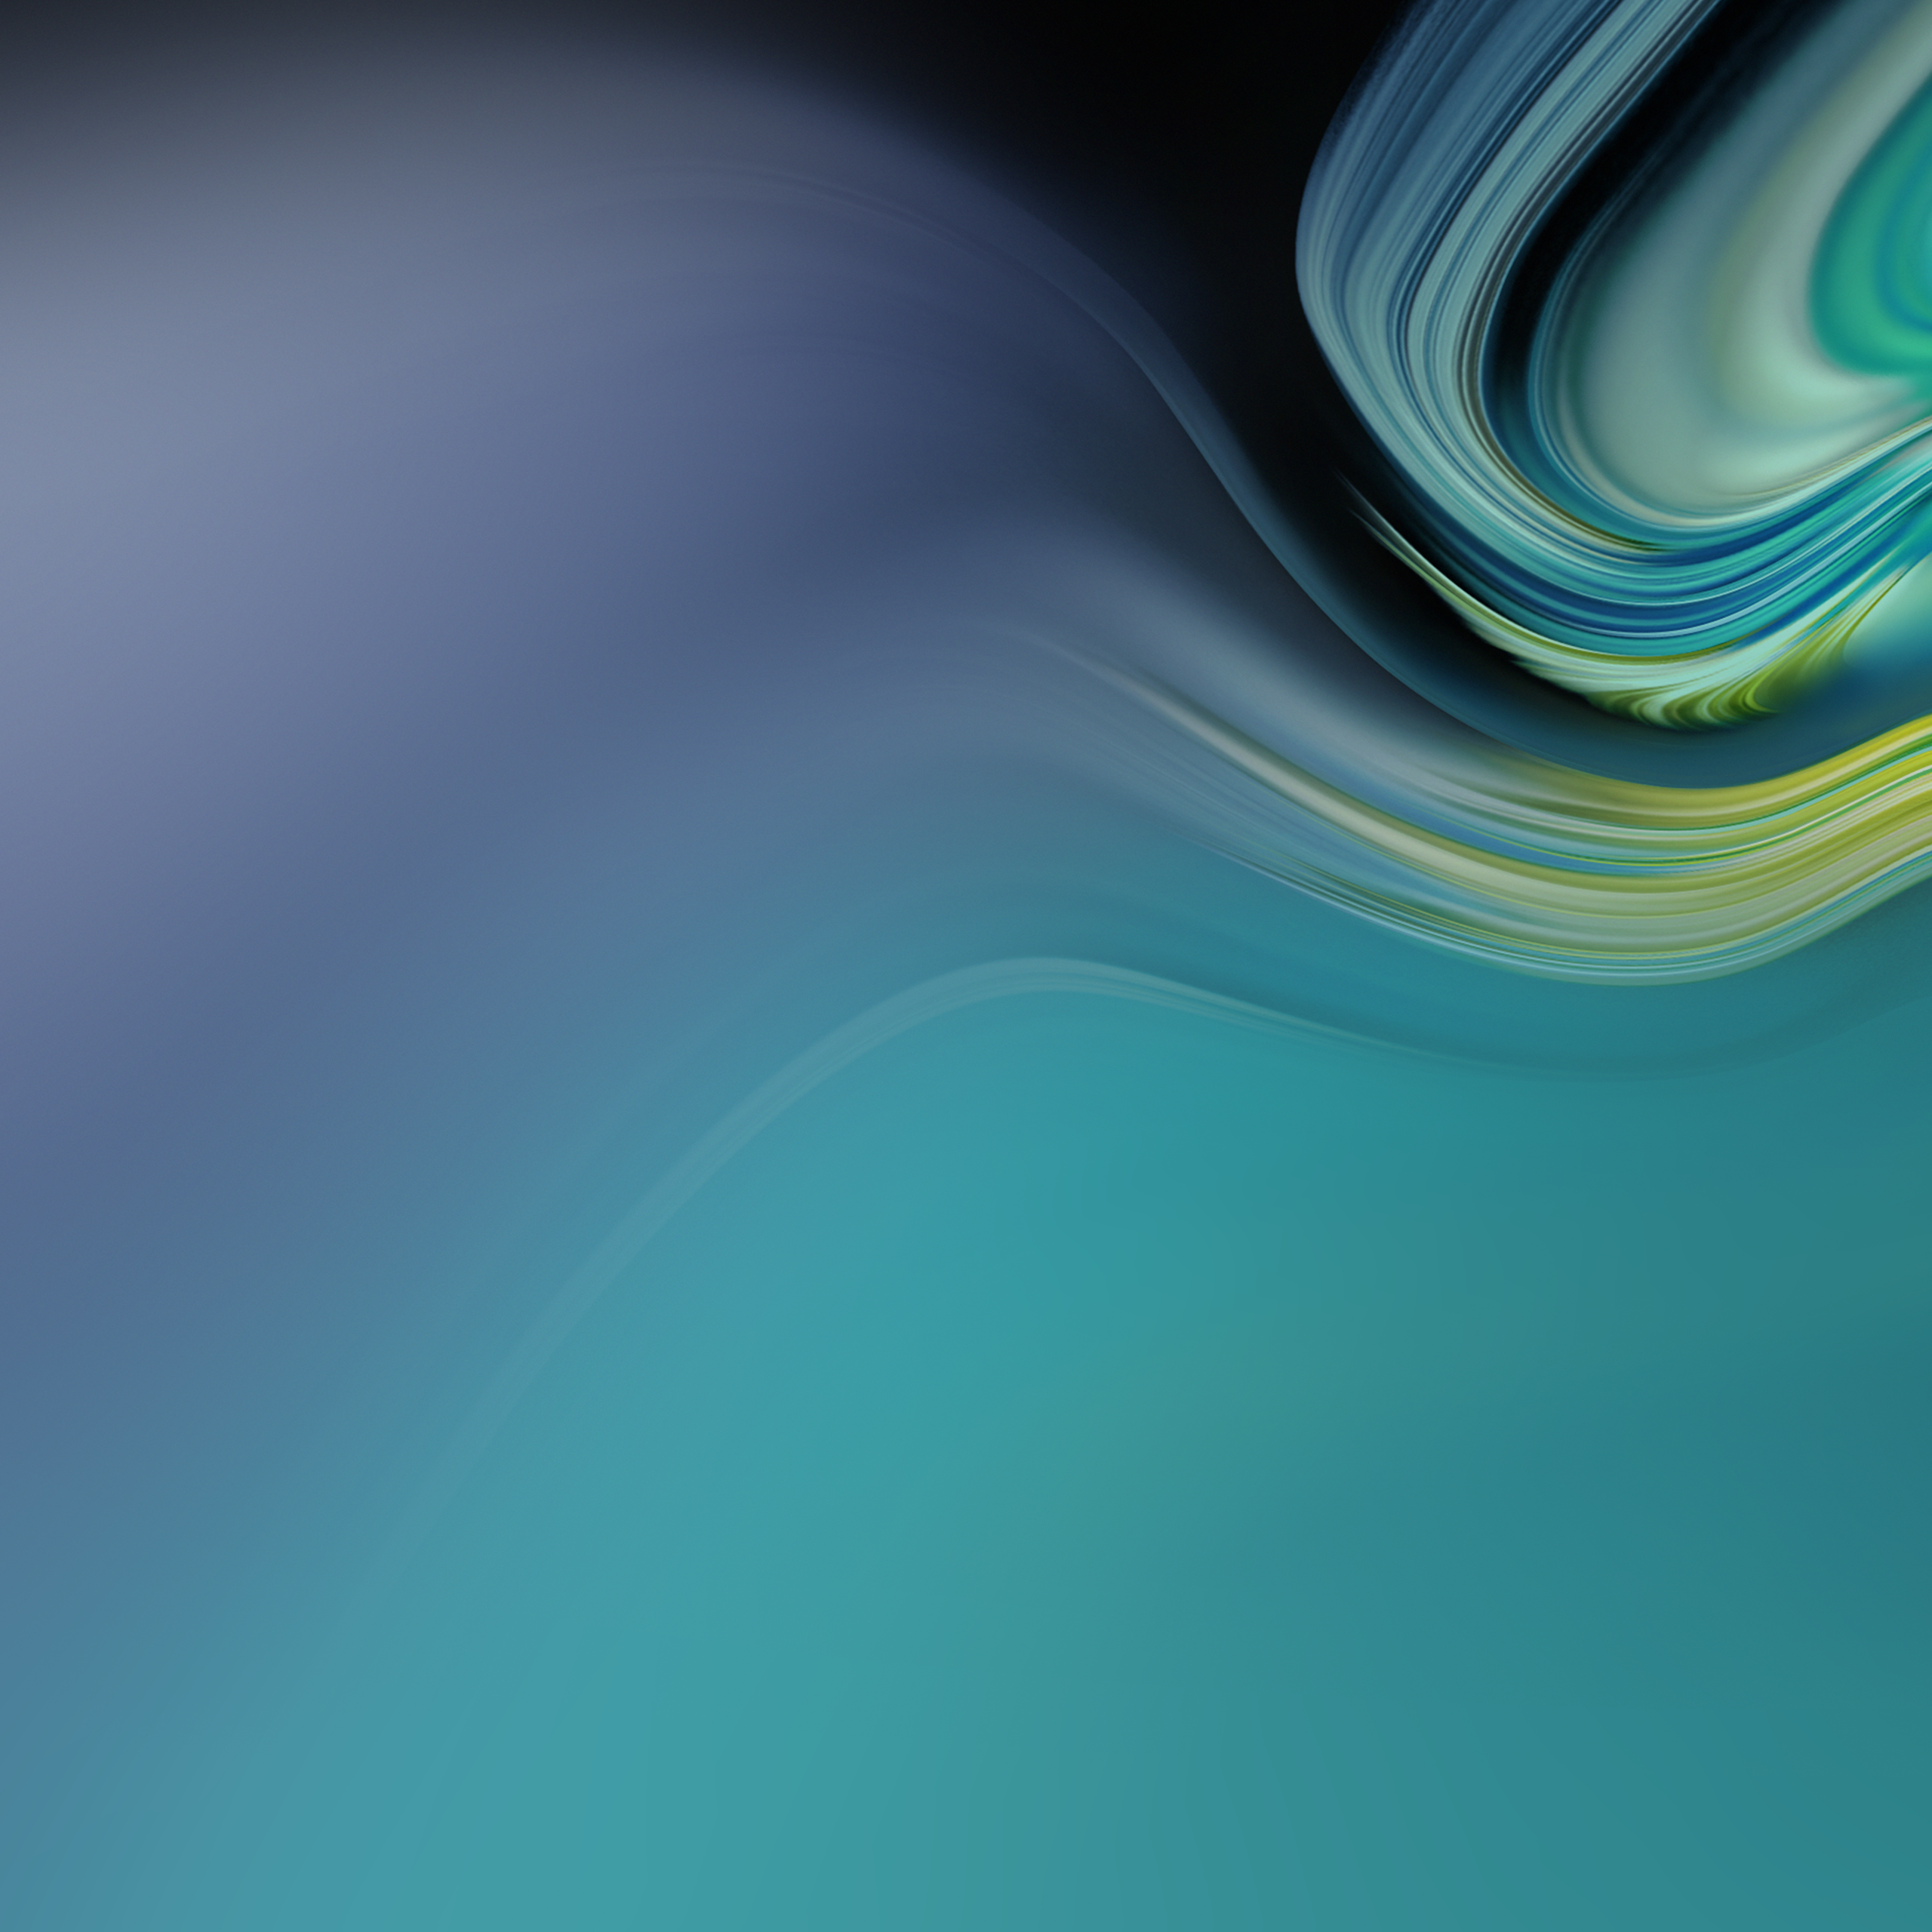 fond d'écran tablette samsung,bleu,vert,aqua,l'eau,turquoise